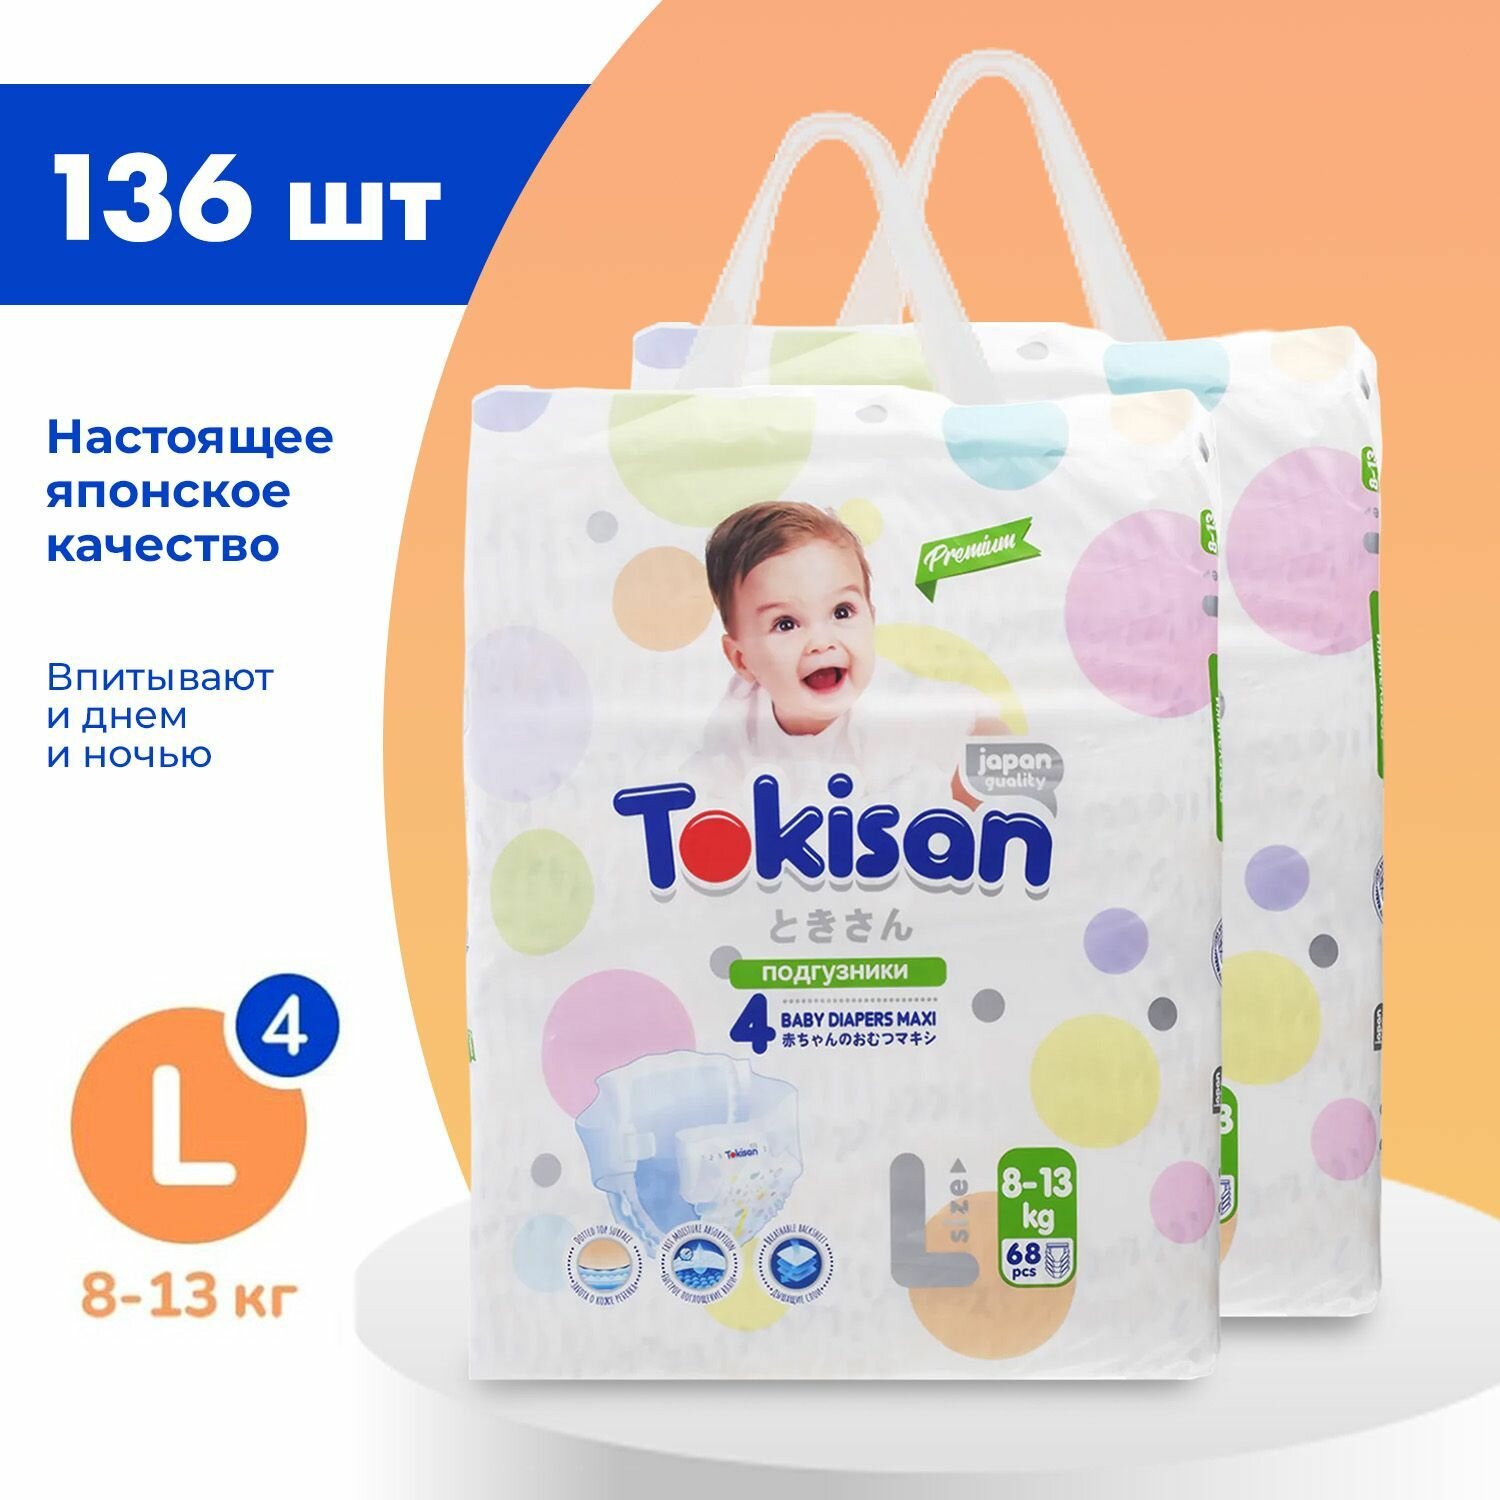 Подгузники детские Tokisan Premium MAXI L для малышей 8-13 кг, 4 размер, 136 шт, дневные (ночные) с индикатором, одноразовые дышащие для детей, девочек и мальчиков / набор (2 упаковки по 68 шт)